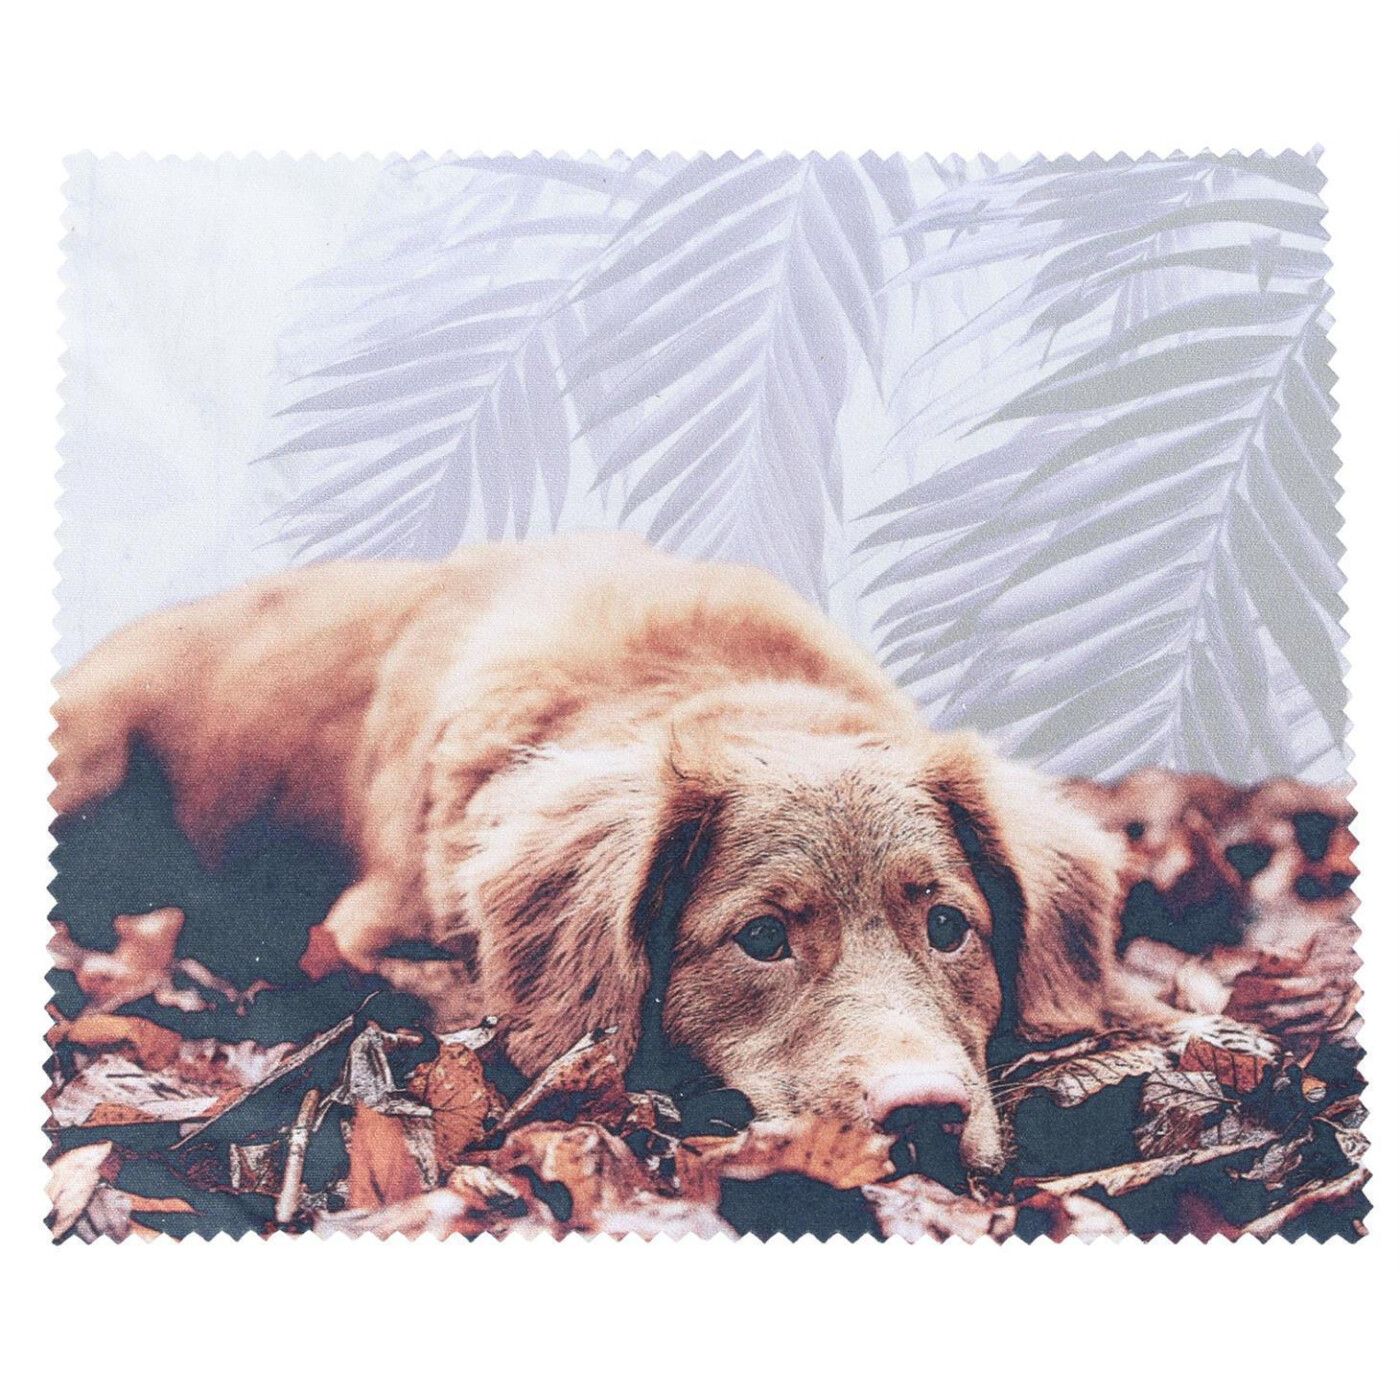  Schöne Tiere Hintergrundbild 1400x1400. Macroclean Microfasertuch Für Eine Perfekt Saubere Brille Mit Hunde M